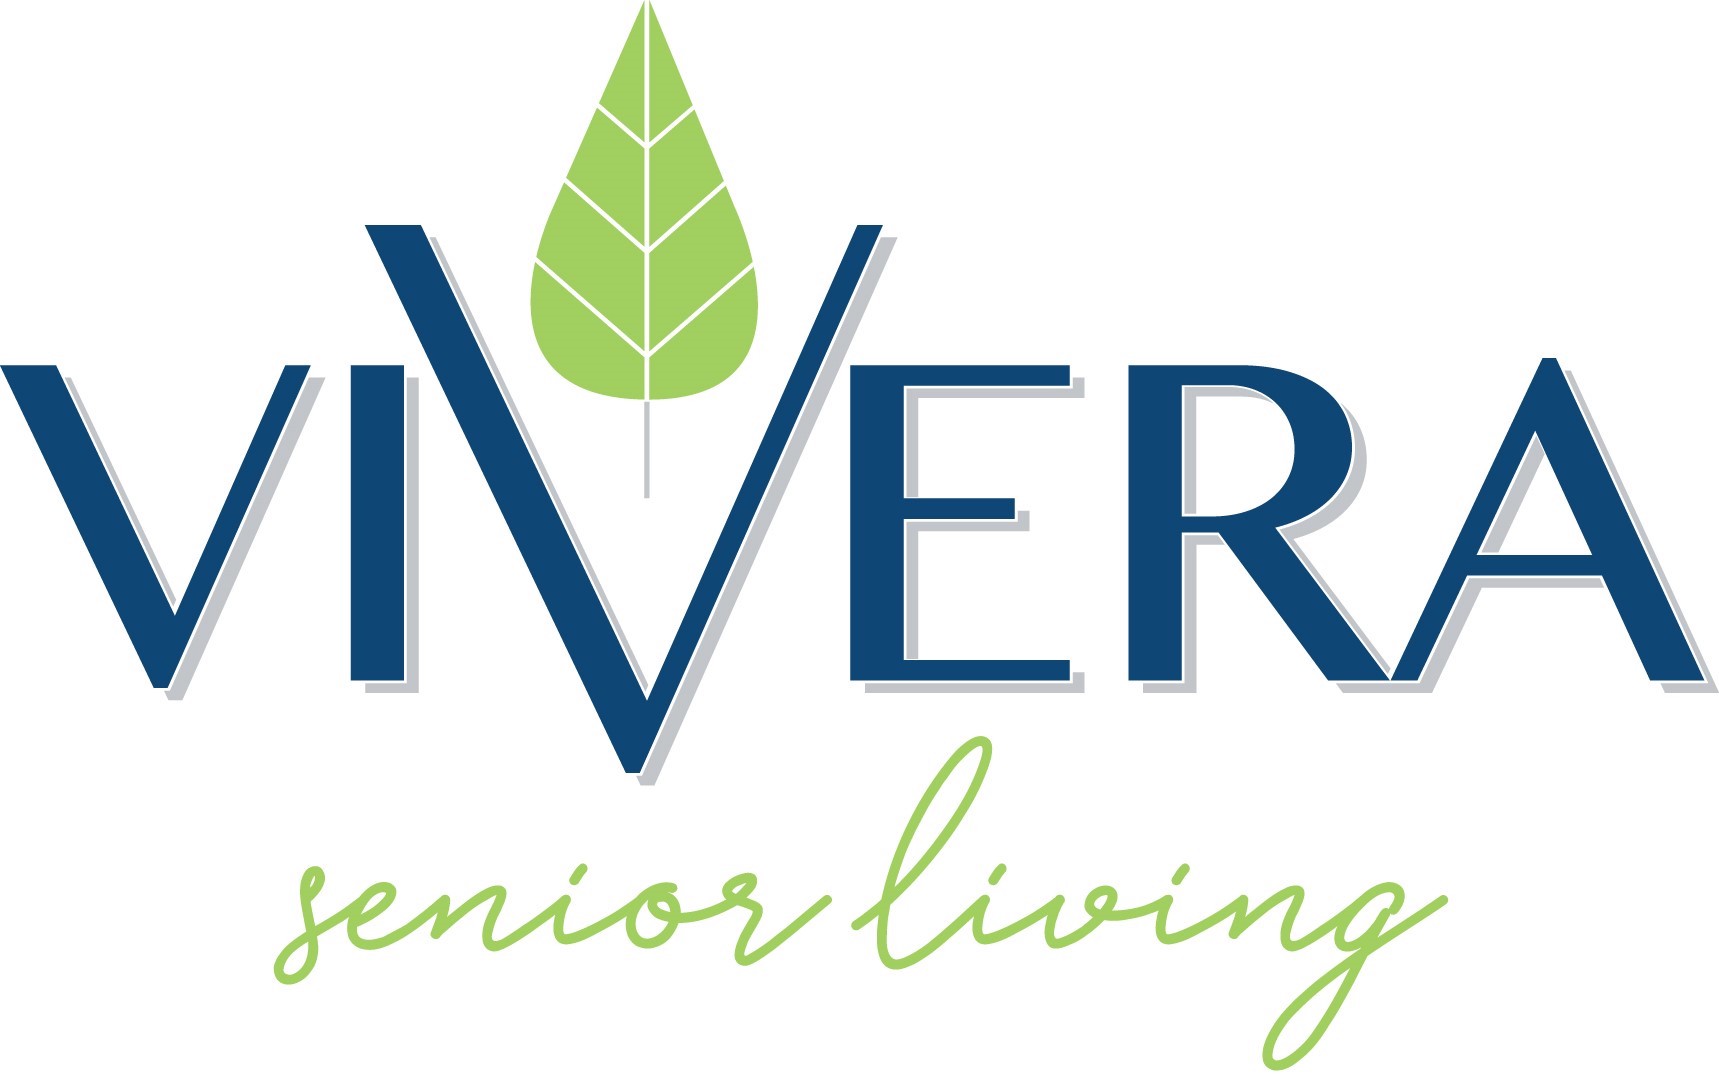 4. Vivera Senior Living (Plata)